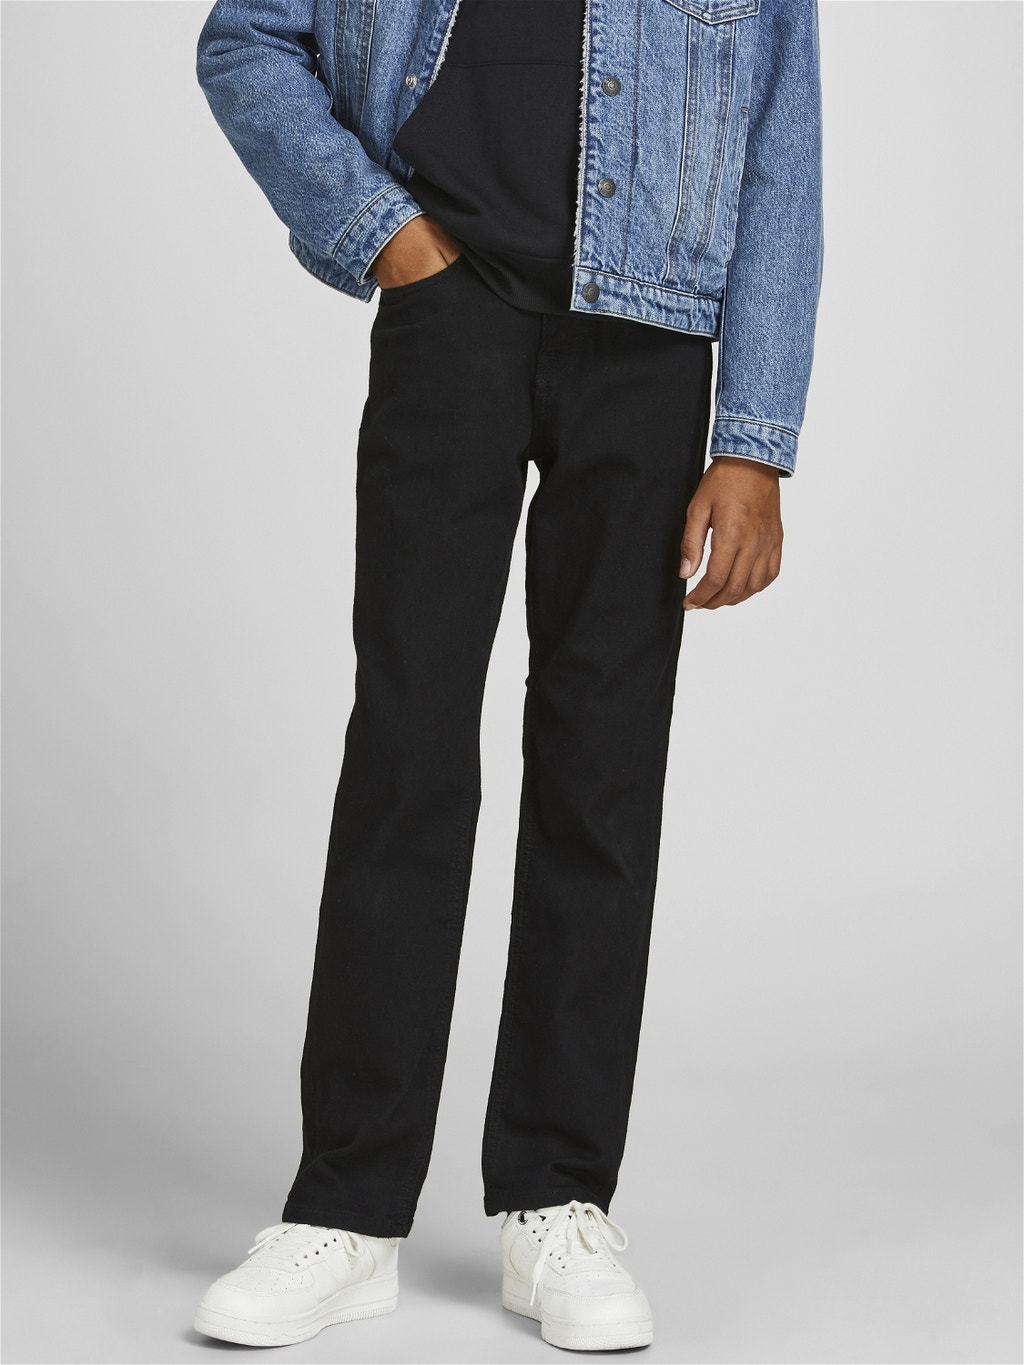 wijsvinger Emulatie haak Boys Clark Original AM 829 Regular fit jeans with 40% discount! | Jack &  Jones®